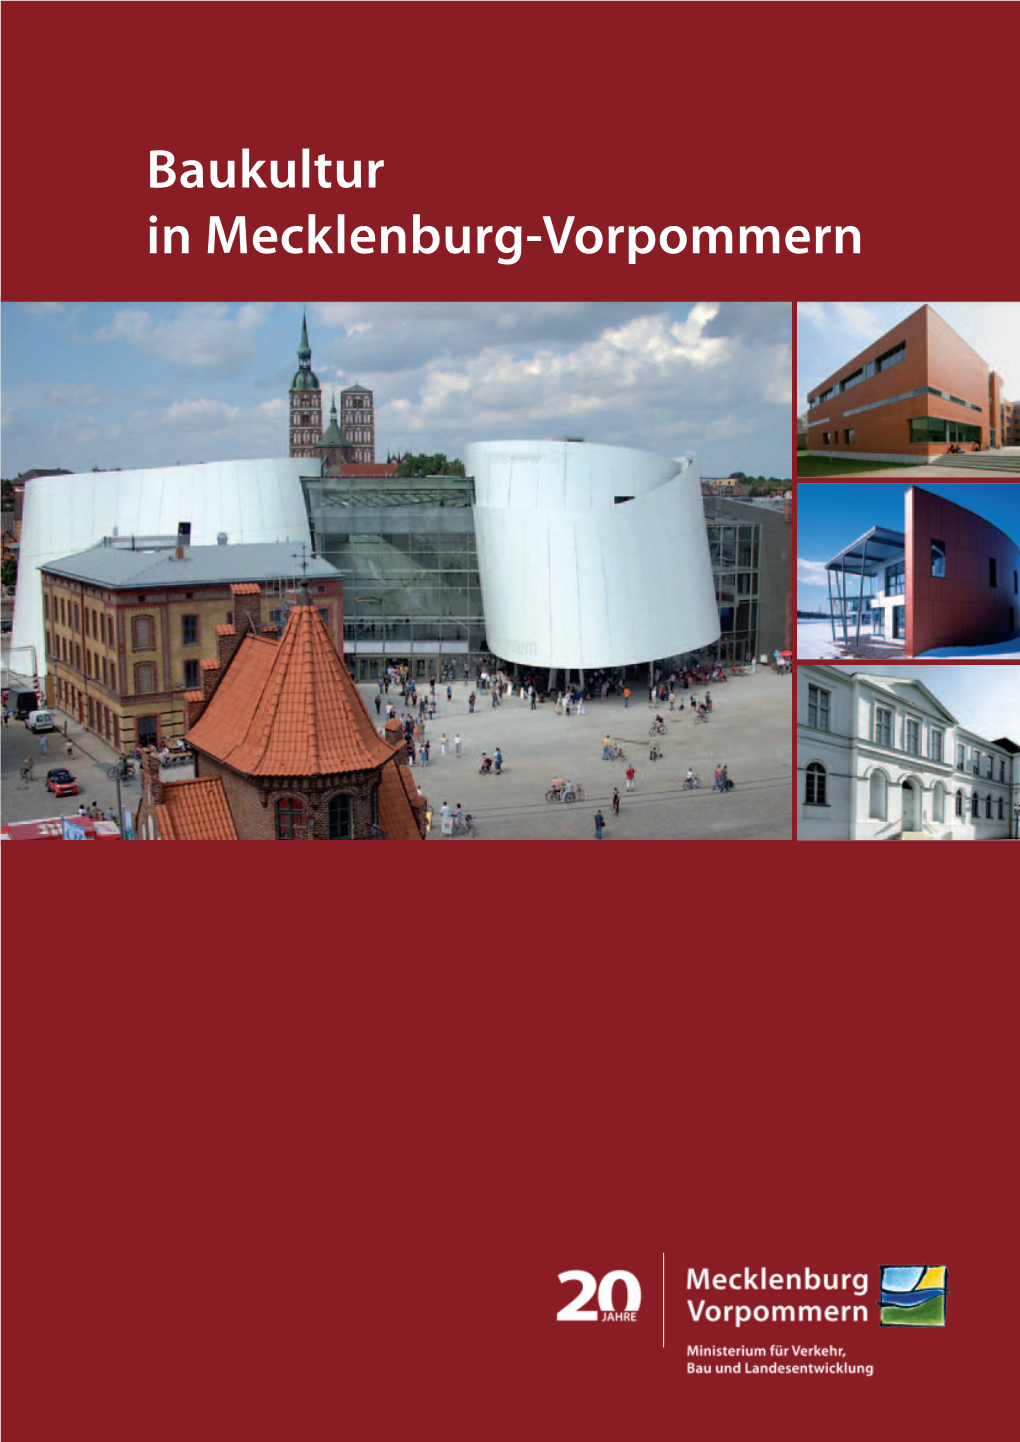 Baukultur in Mecklenburg-Vorpommern